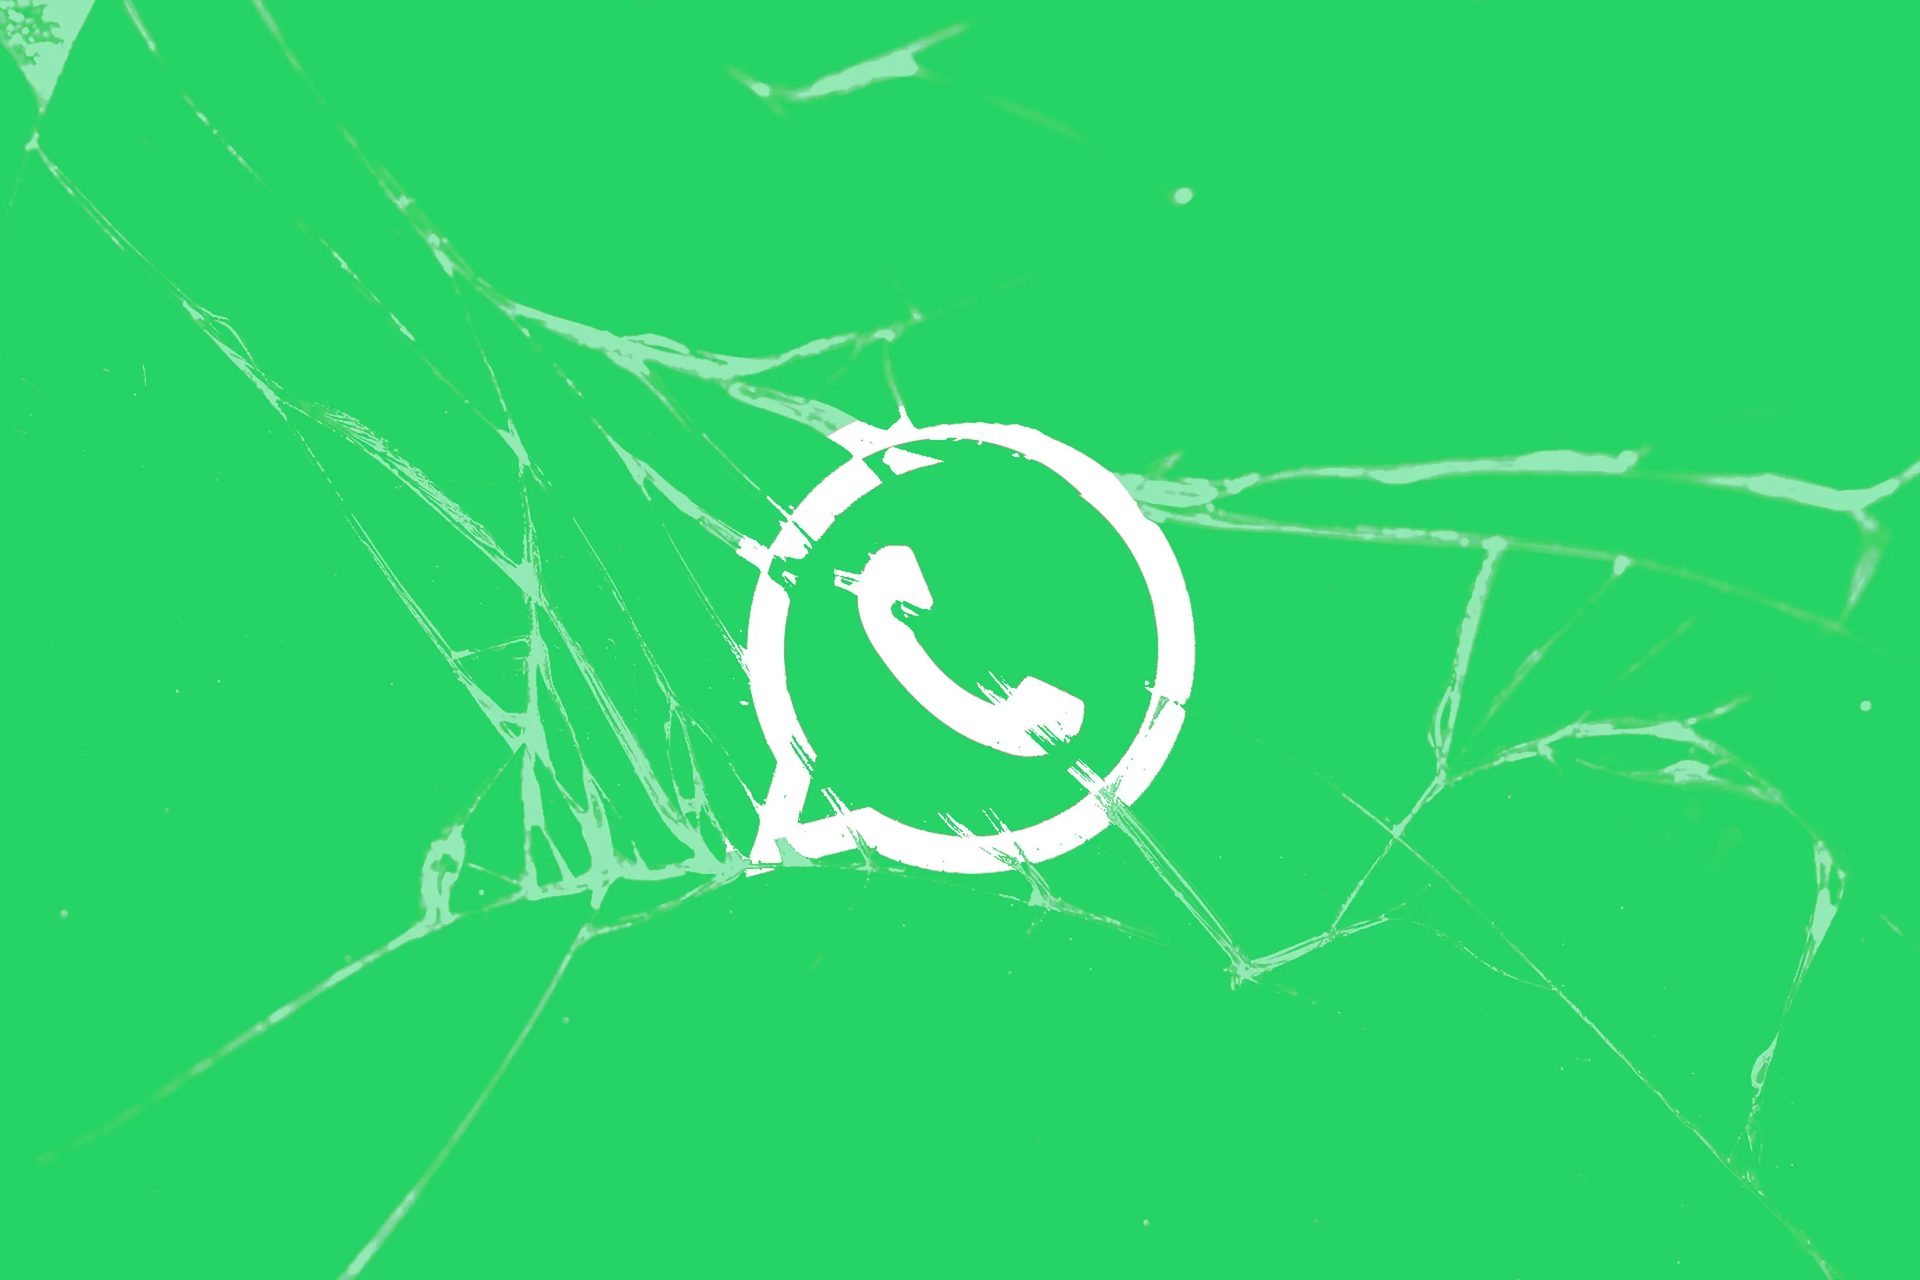 Wyciek danych WhatsApp z ciemnej sieci: dotyczy 500 milionów użytkowników